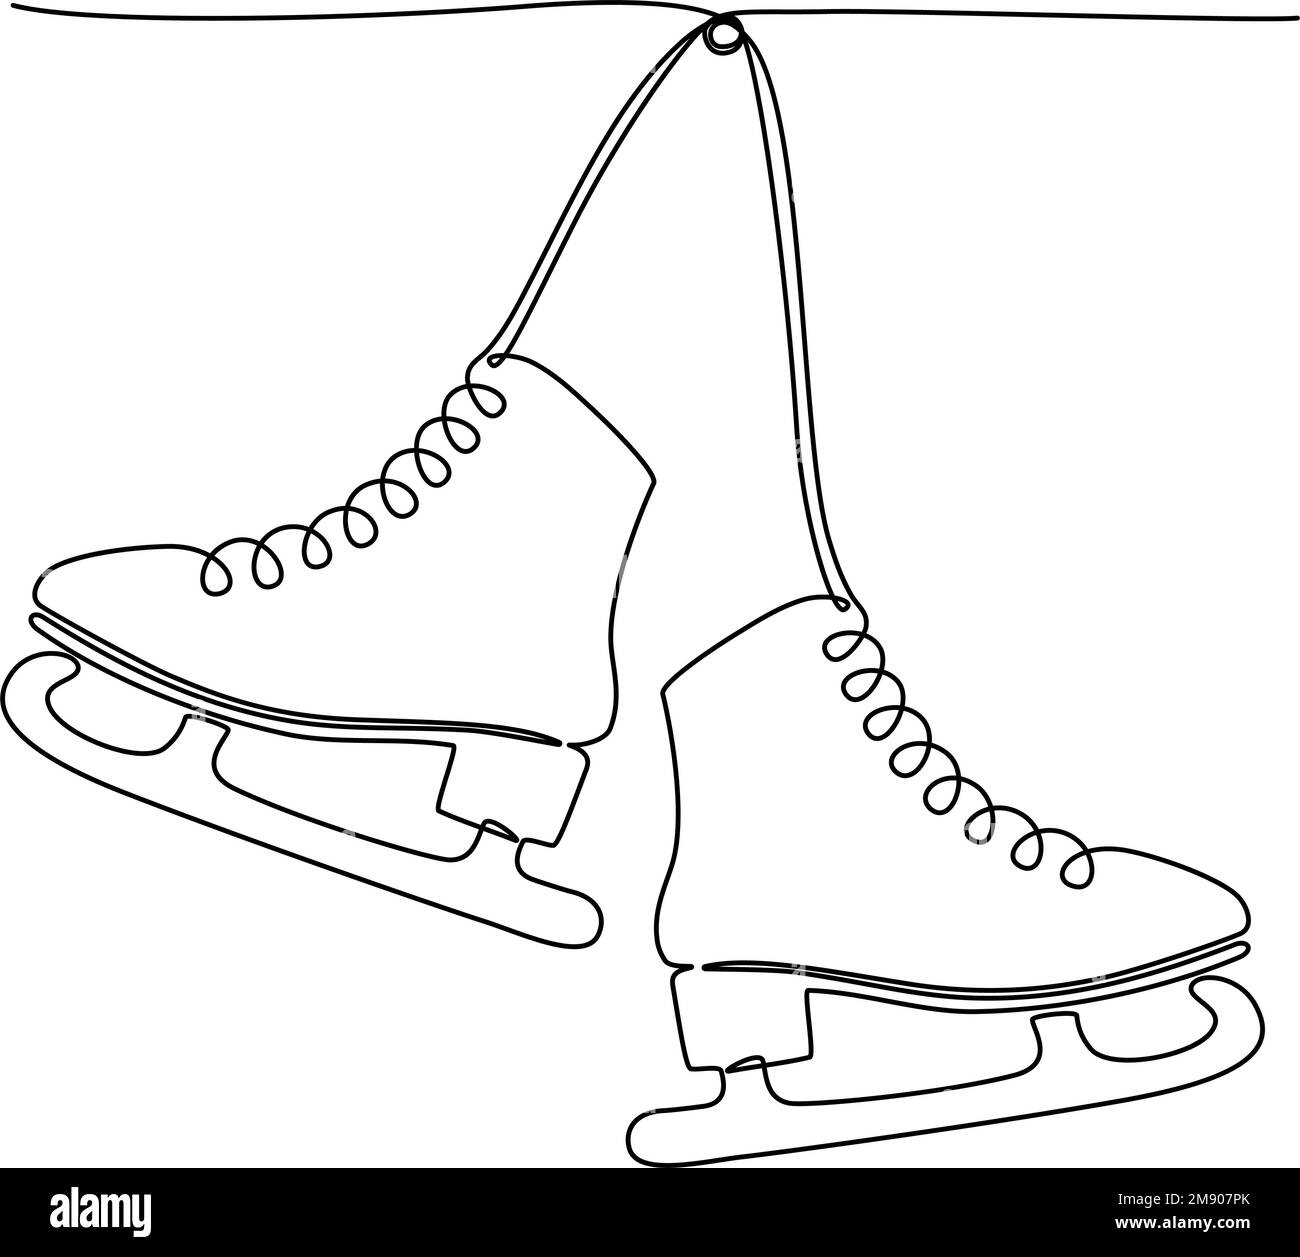 Durchgehende Zeichnung einer Linie von zwei hängenden Eislauffiguren. Vektordarstellung Stock Vektor